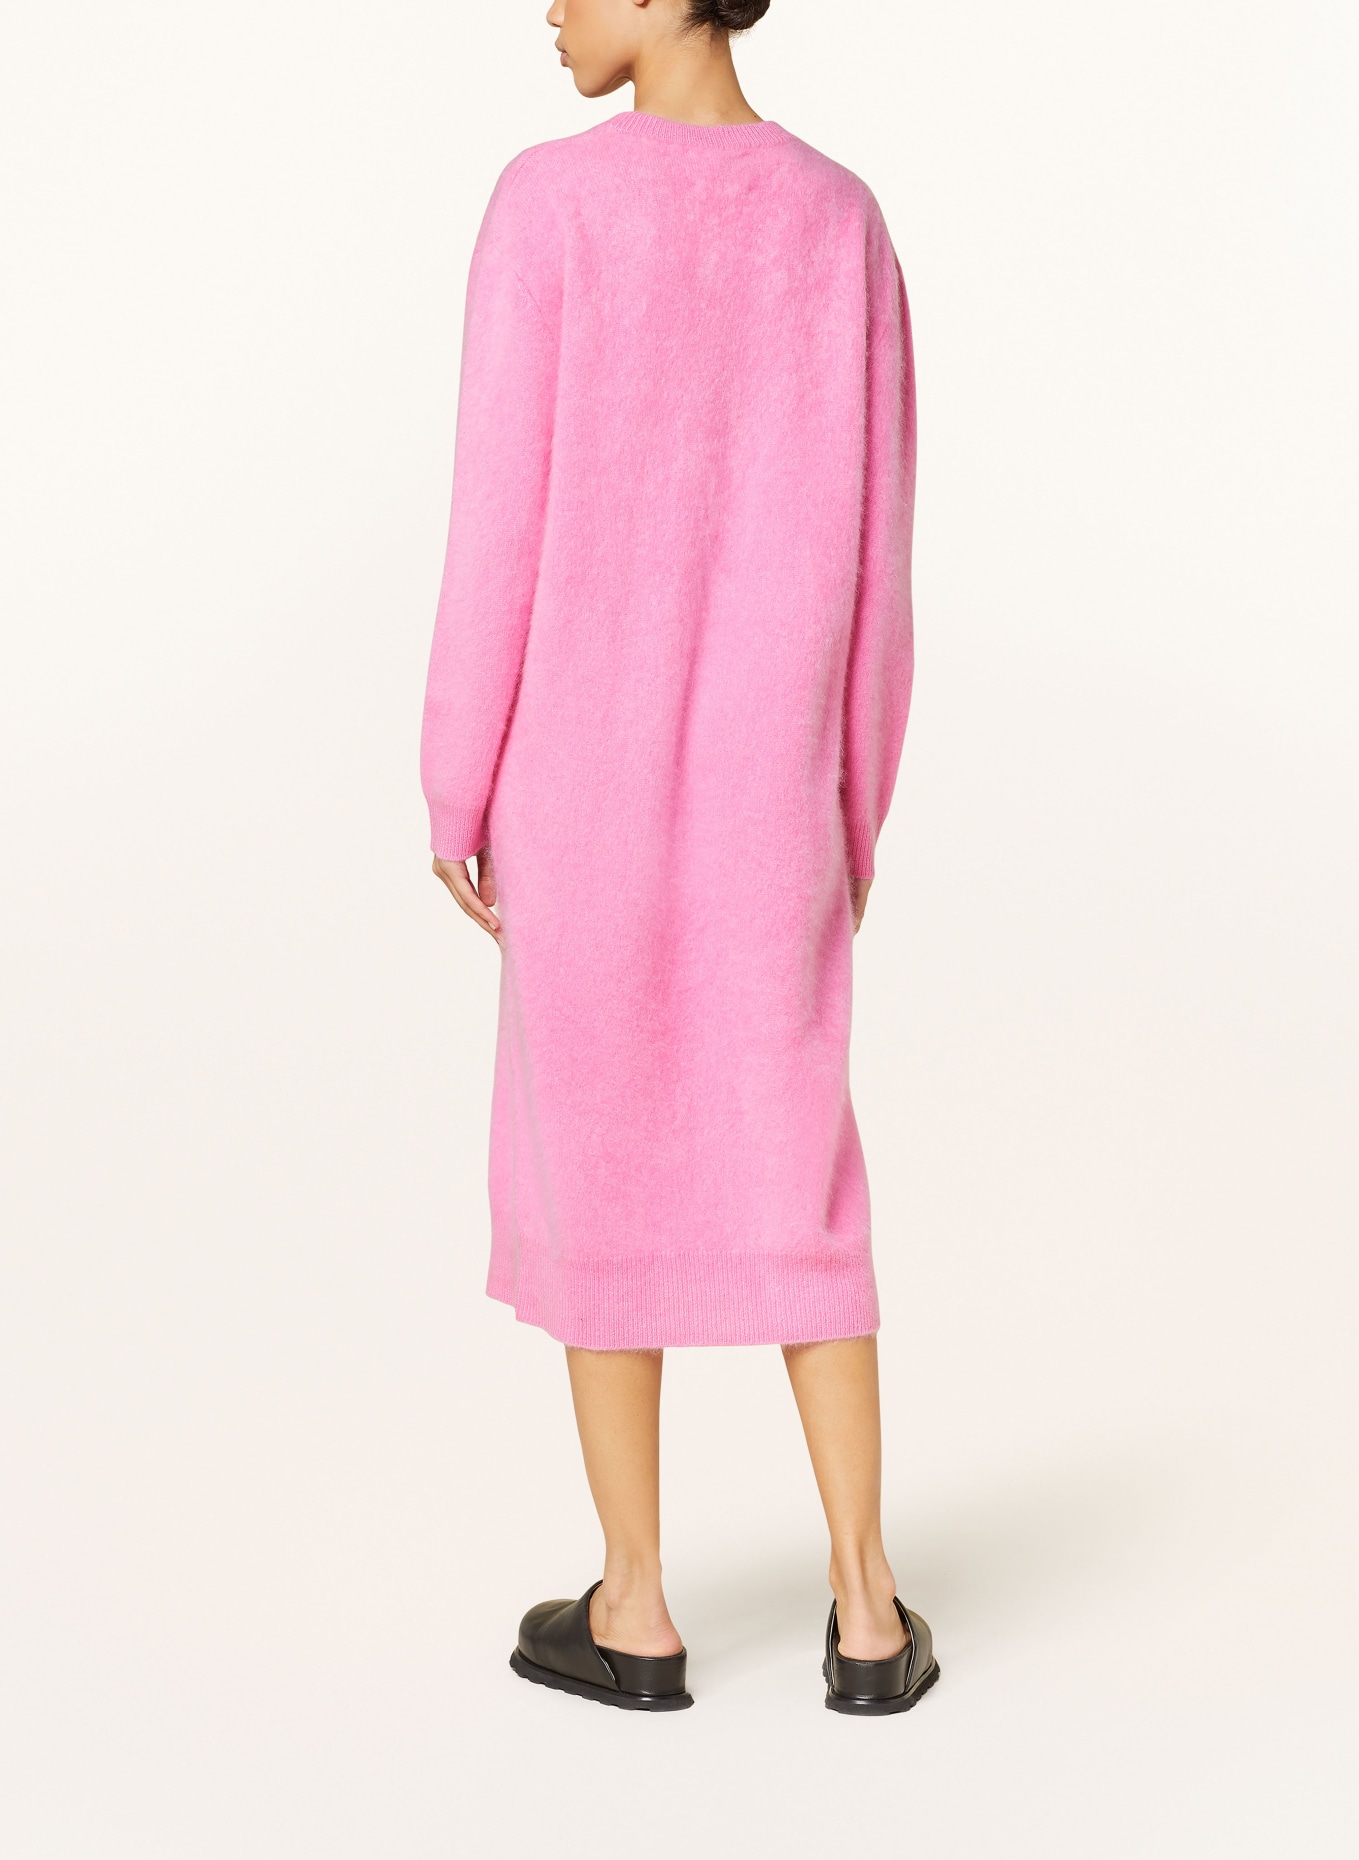 LISA YANG Cashmere knit dress, Color: PINK (Image 3)